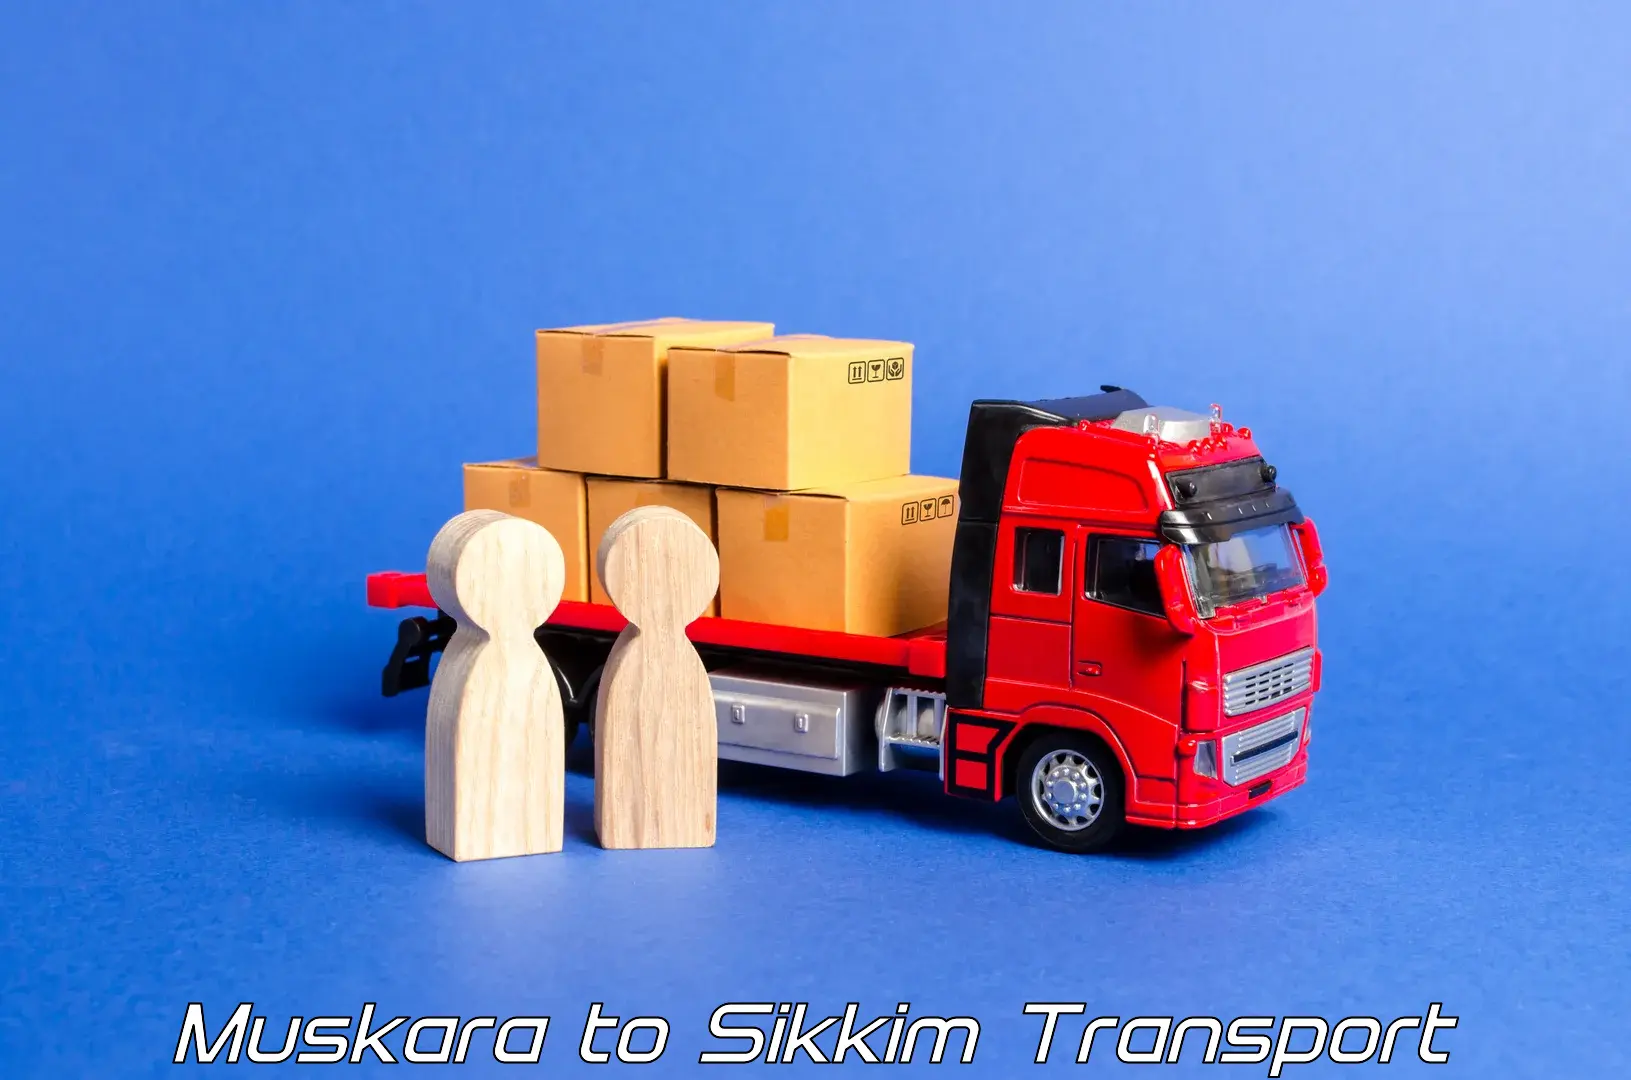 Commercial transport service Muskara to Pelling